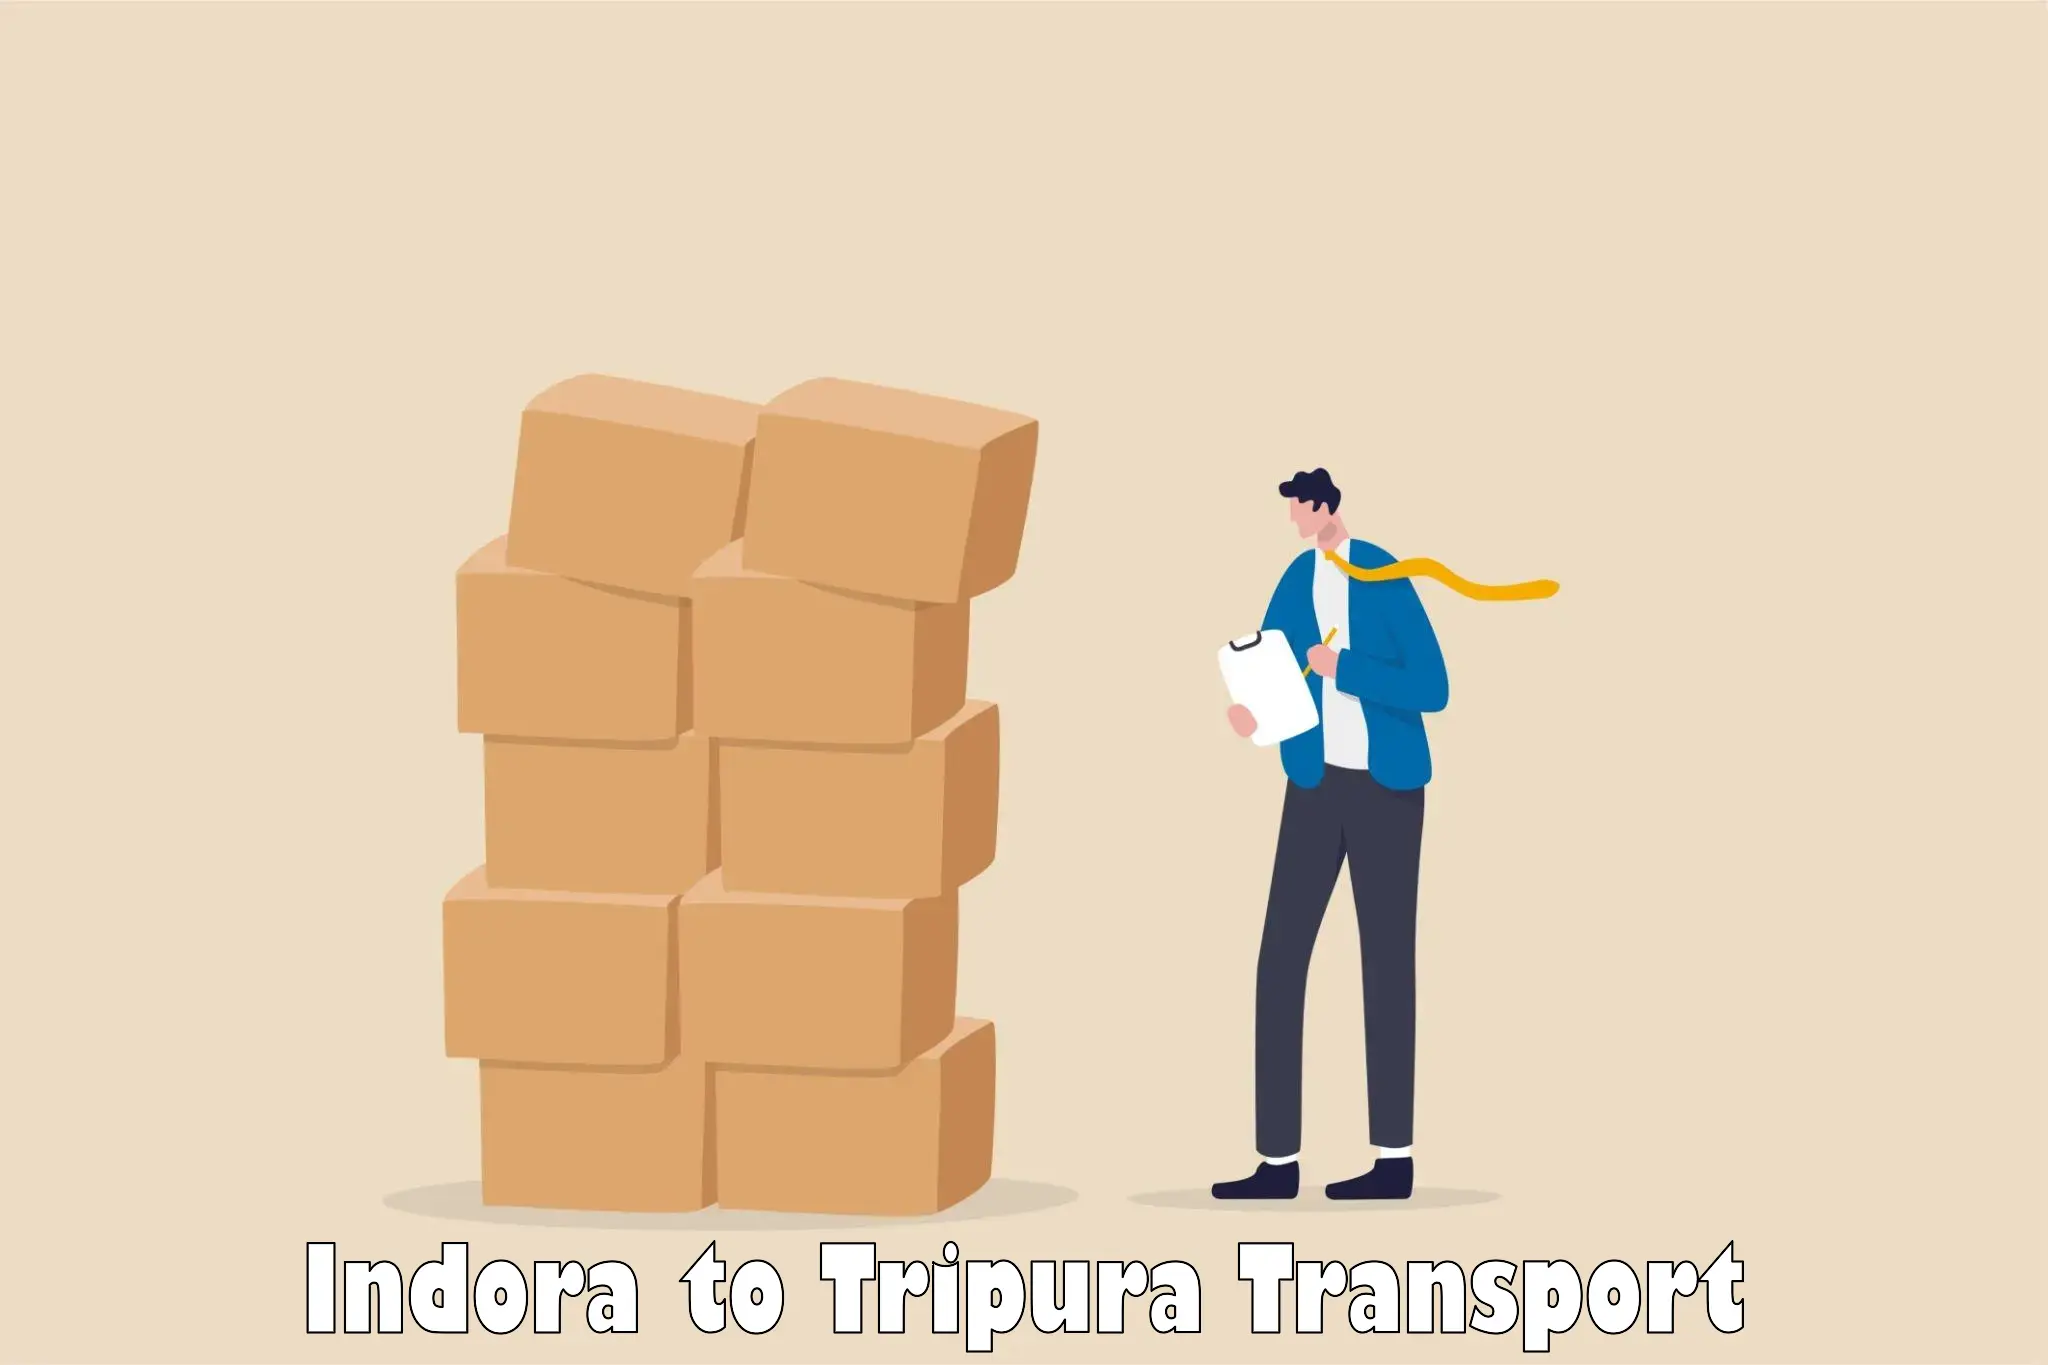 Cargo train transport services Indora to Amarpur